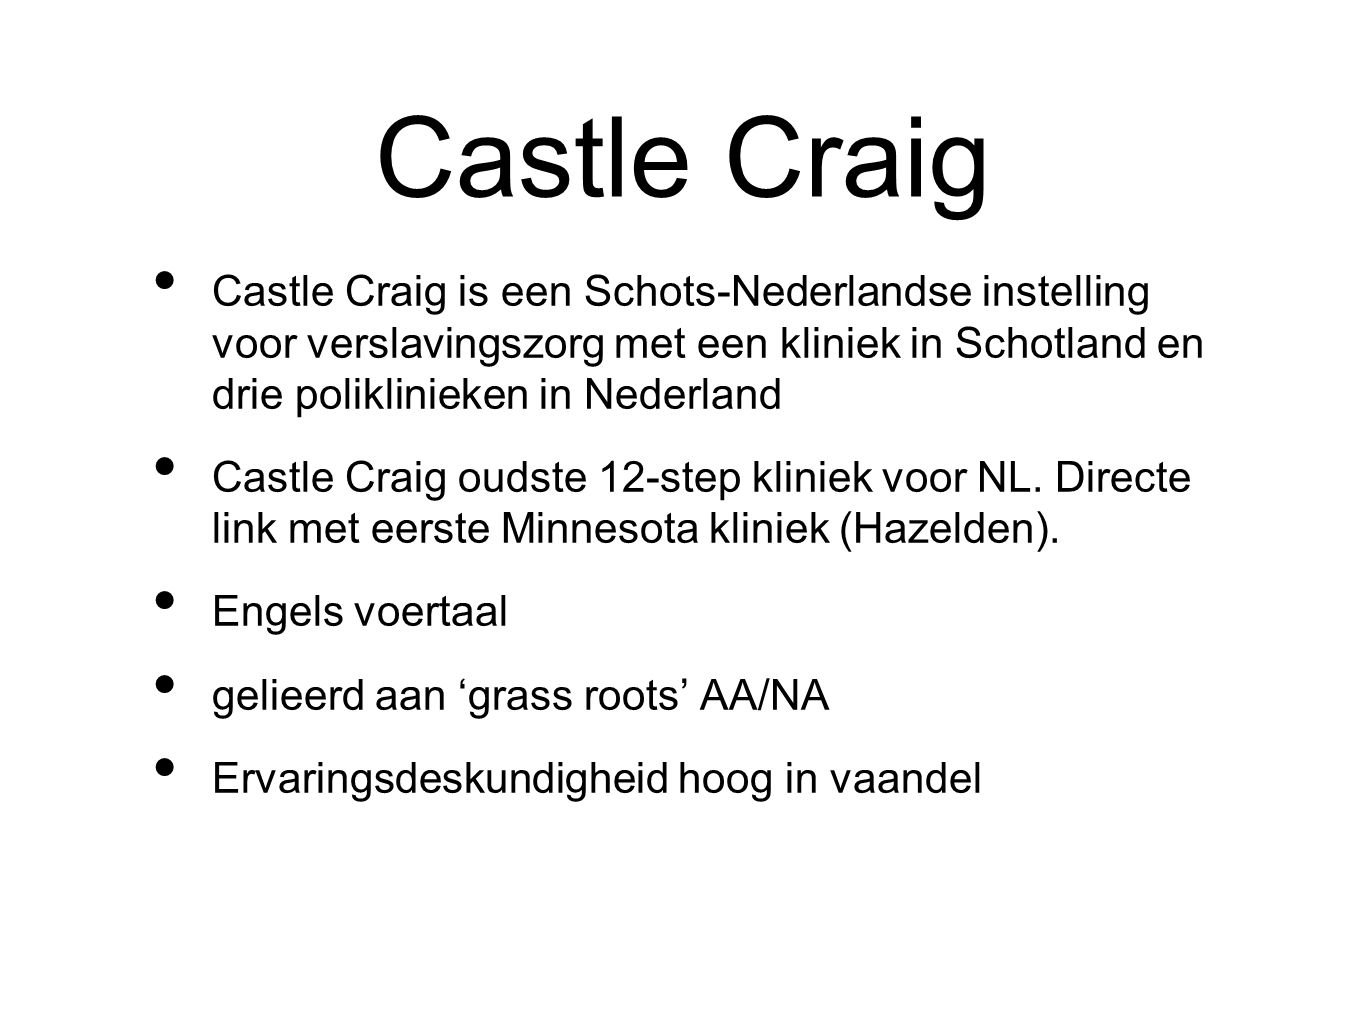 Castle Craig Castle Craig is een Schots-Nederlandse instelling voor verslavingszorg met een kliniek in Schotland en drie poliklinieken in Nederland.